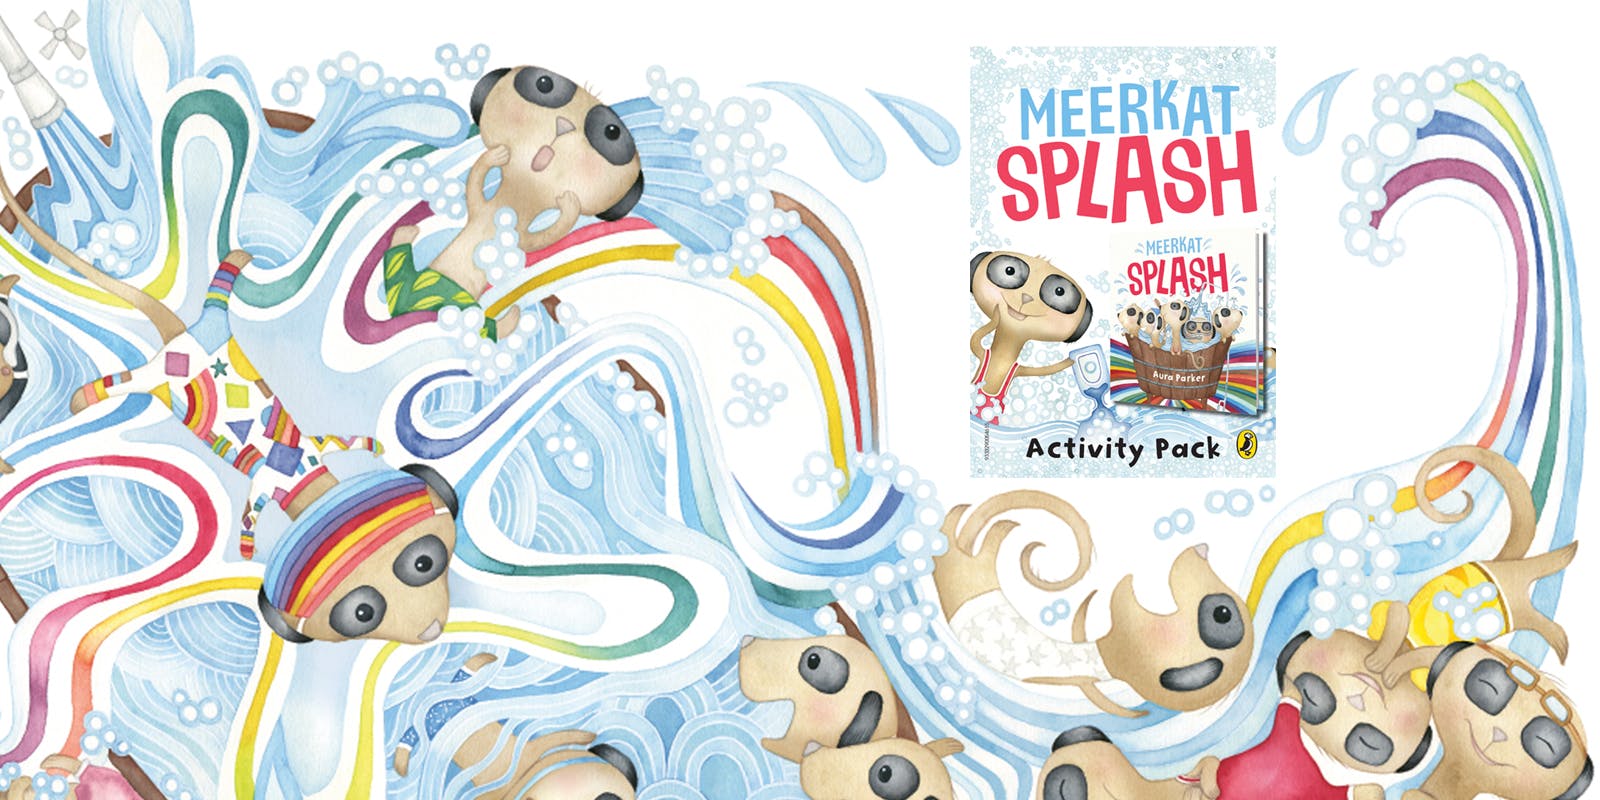 Meerkat Splash activity pack